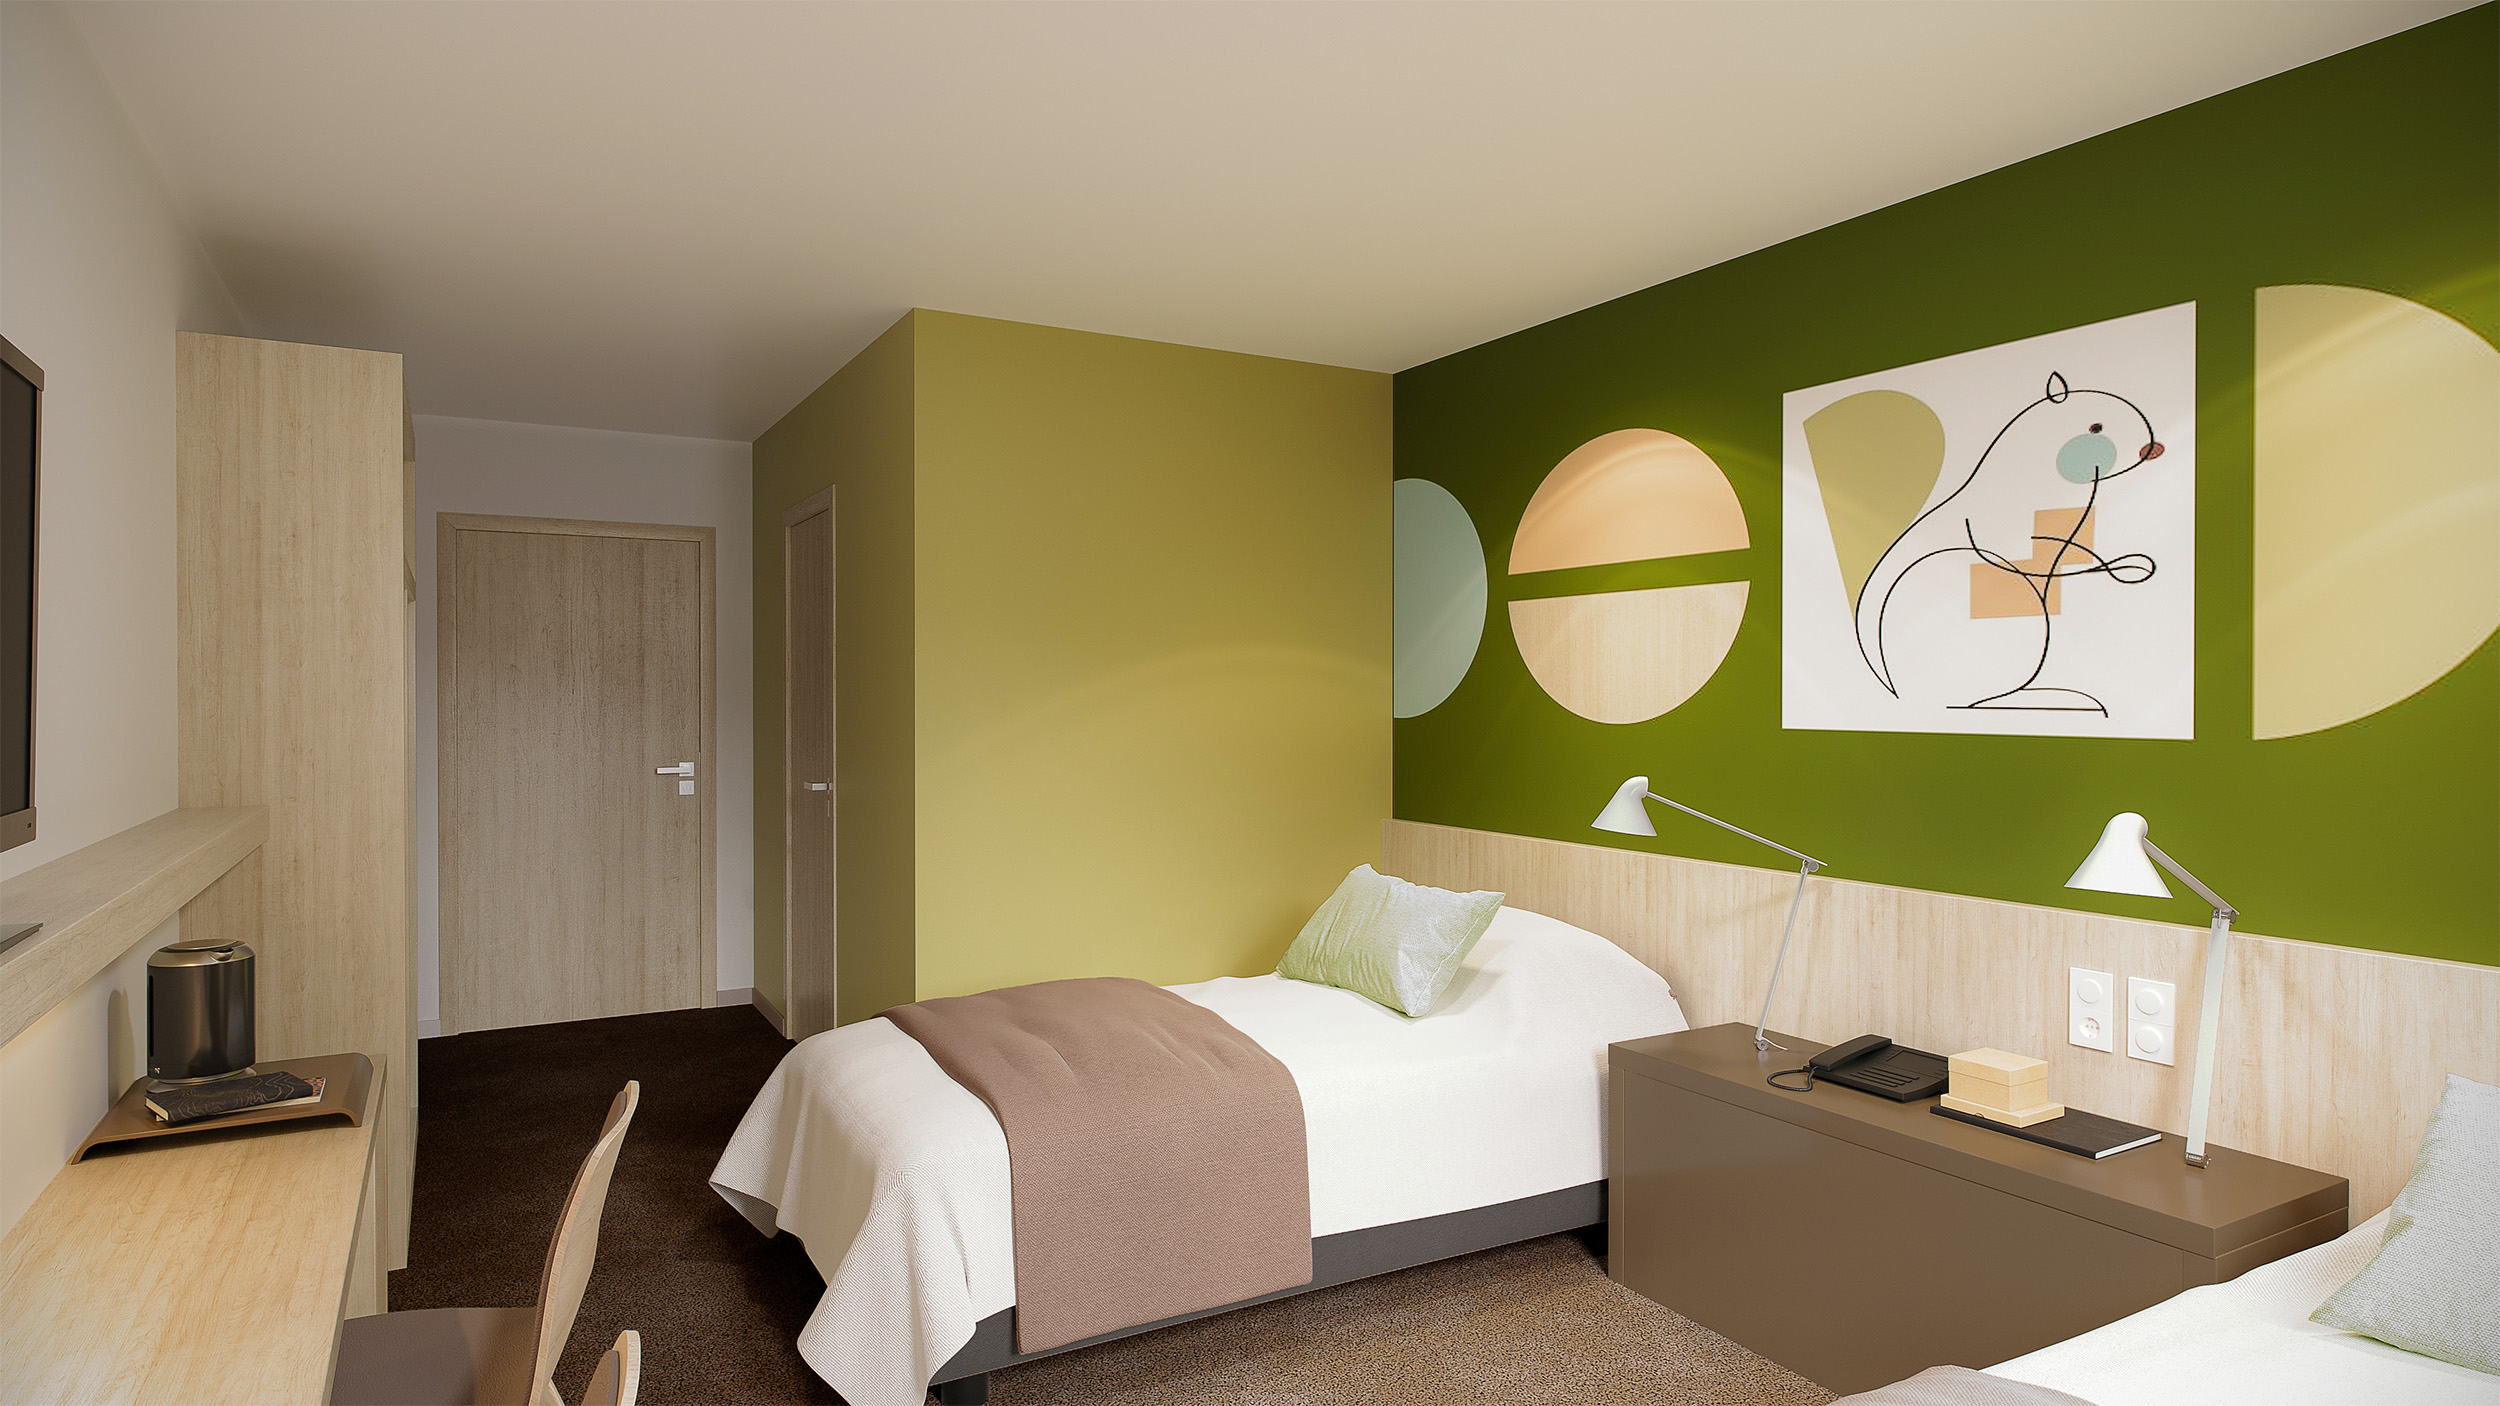 Chambres au graphisme contemporain centré autour des couleurs de la forêt, atmosphère moderne et chaleureuse avec des tons vert boisé